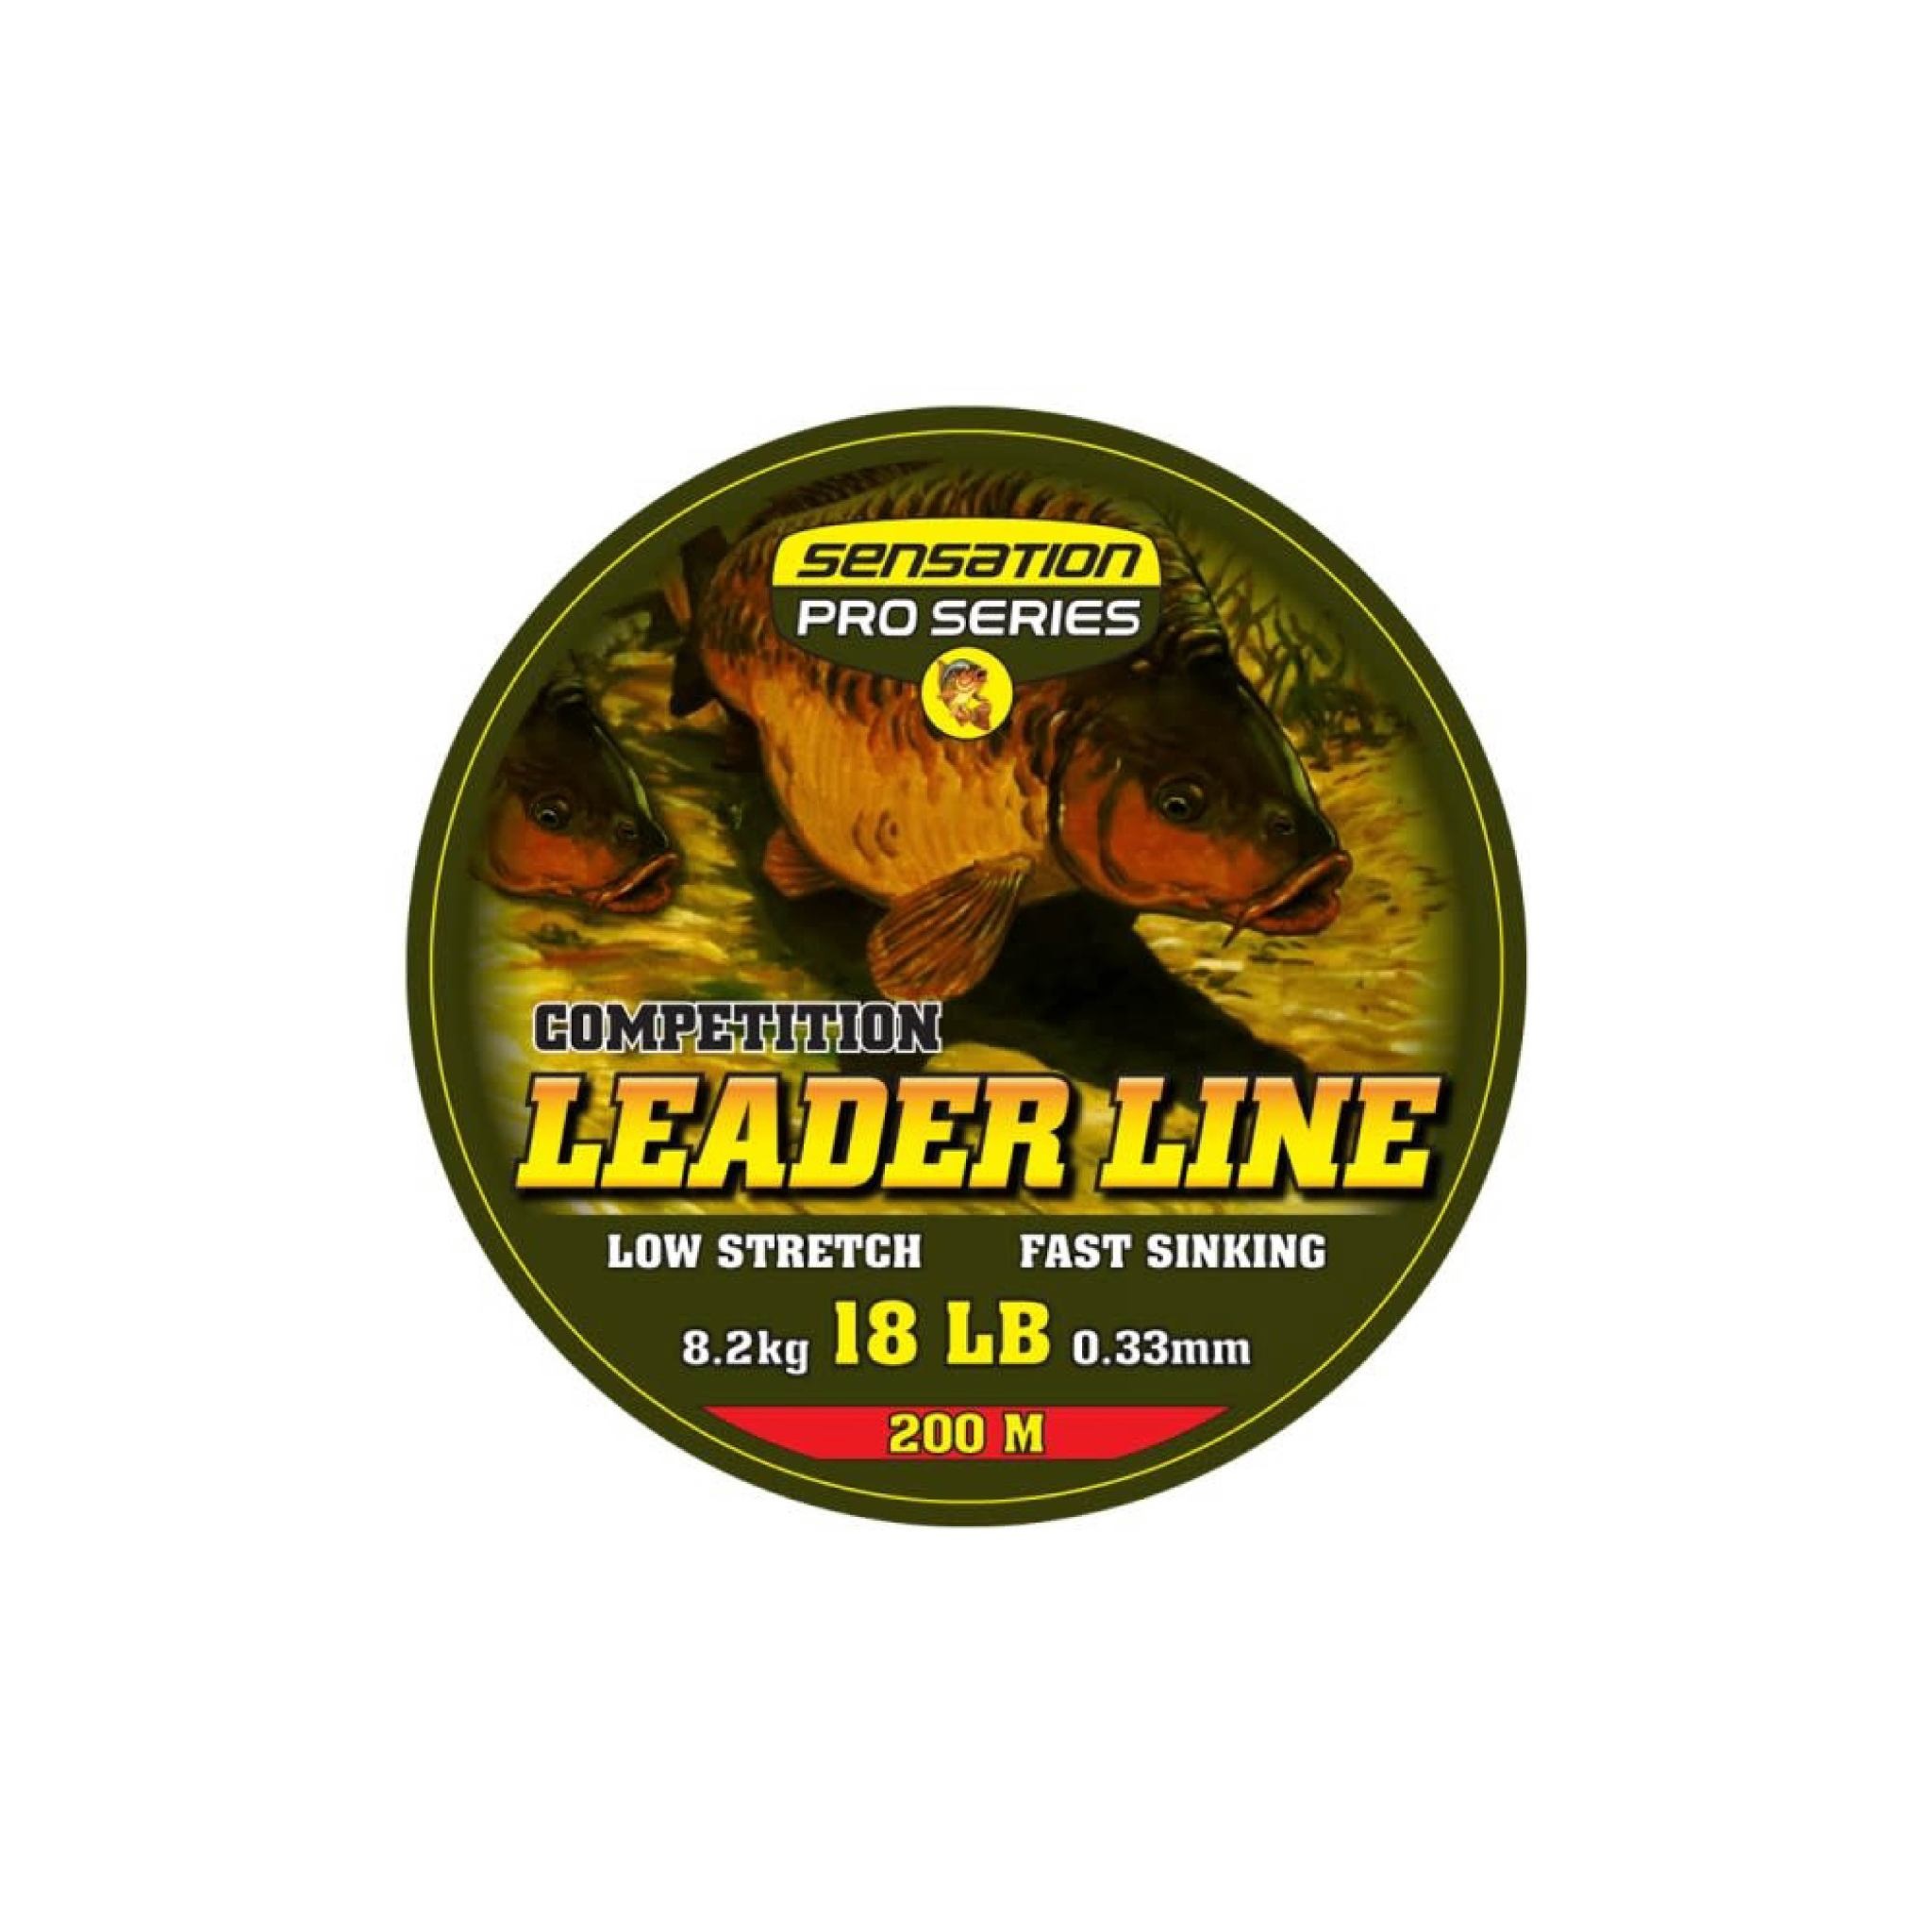 Other (Sensation) LINE P/SERIES LEADER BLACK 200M - Western